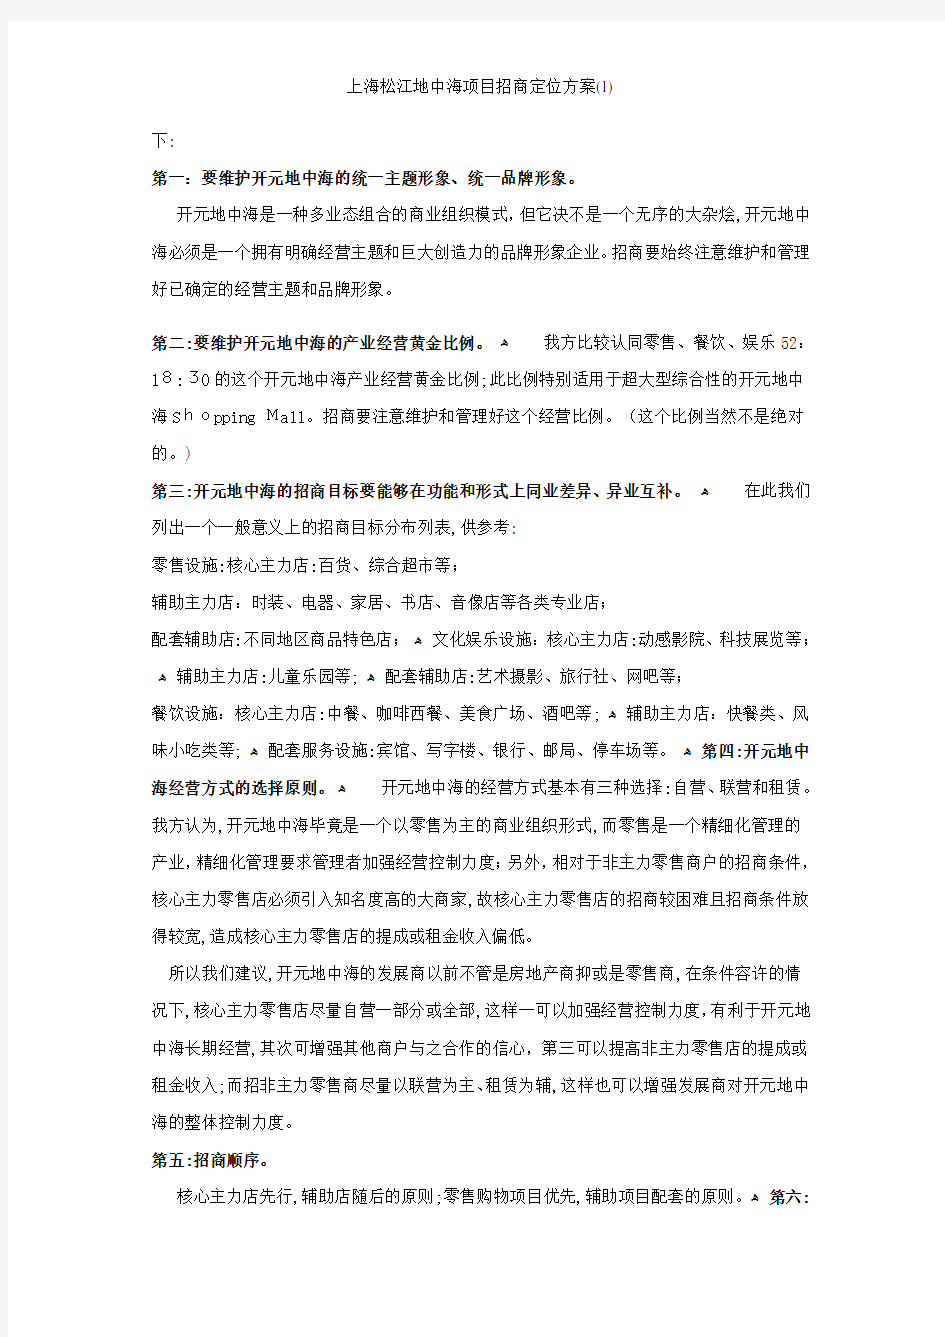 上海松江地中海项目招商定位方案(1)